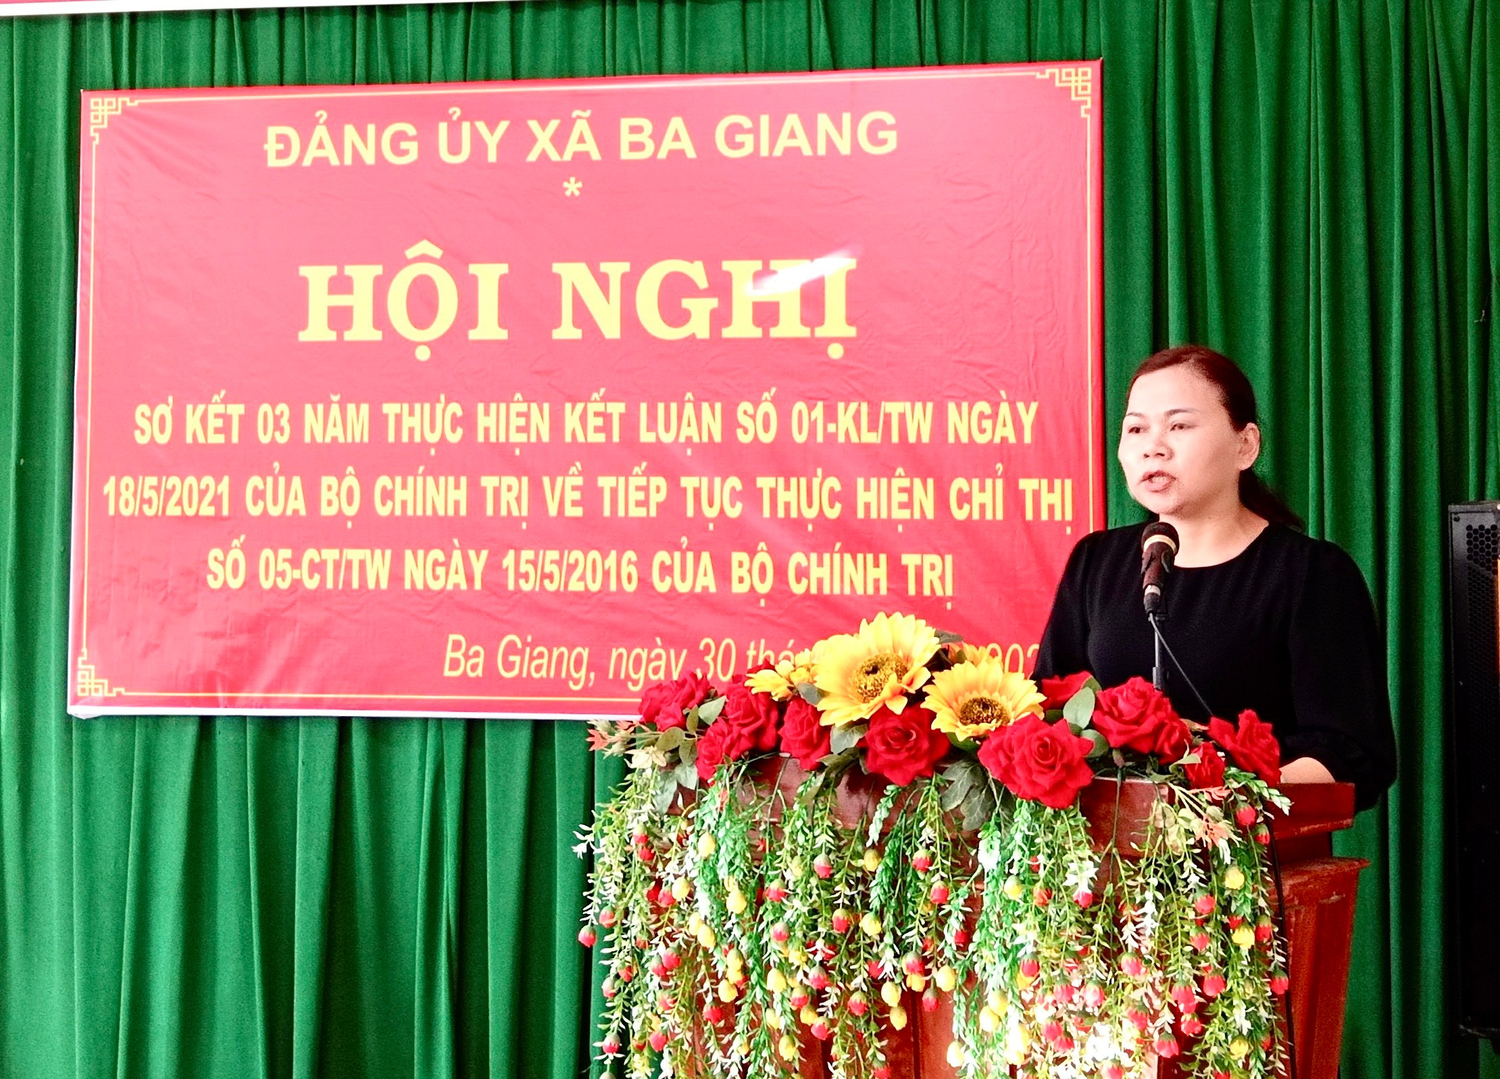 Đảng ủy xã Ba Giang sơ kết 03 năm thực hiện Kết luận số 01-KL/TW ngày 18/5/2021 của Bộ Chính trị về tiếp tục thực hiện Chỉ thị 05–CT/TW đẩy mạnh học tập và làm theo tư tưởng, đạo đức, phong cách Hồ Chí Minh